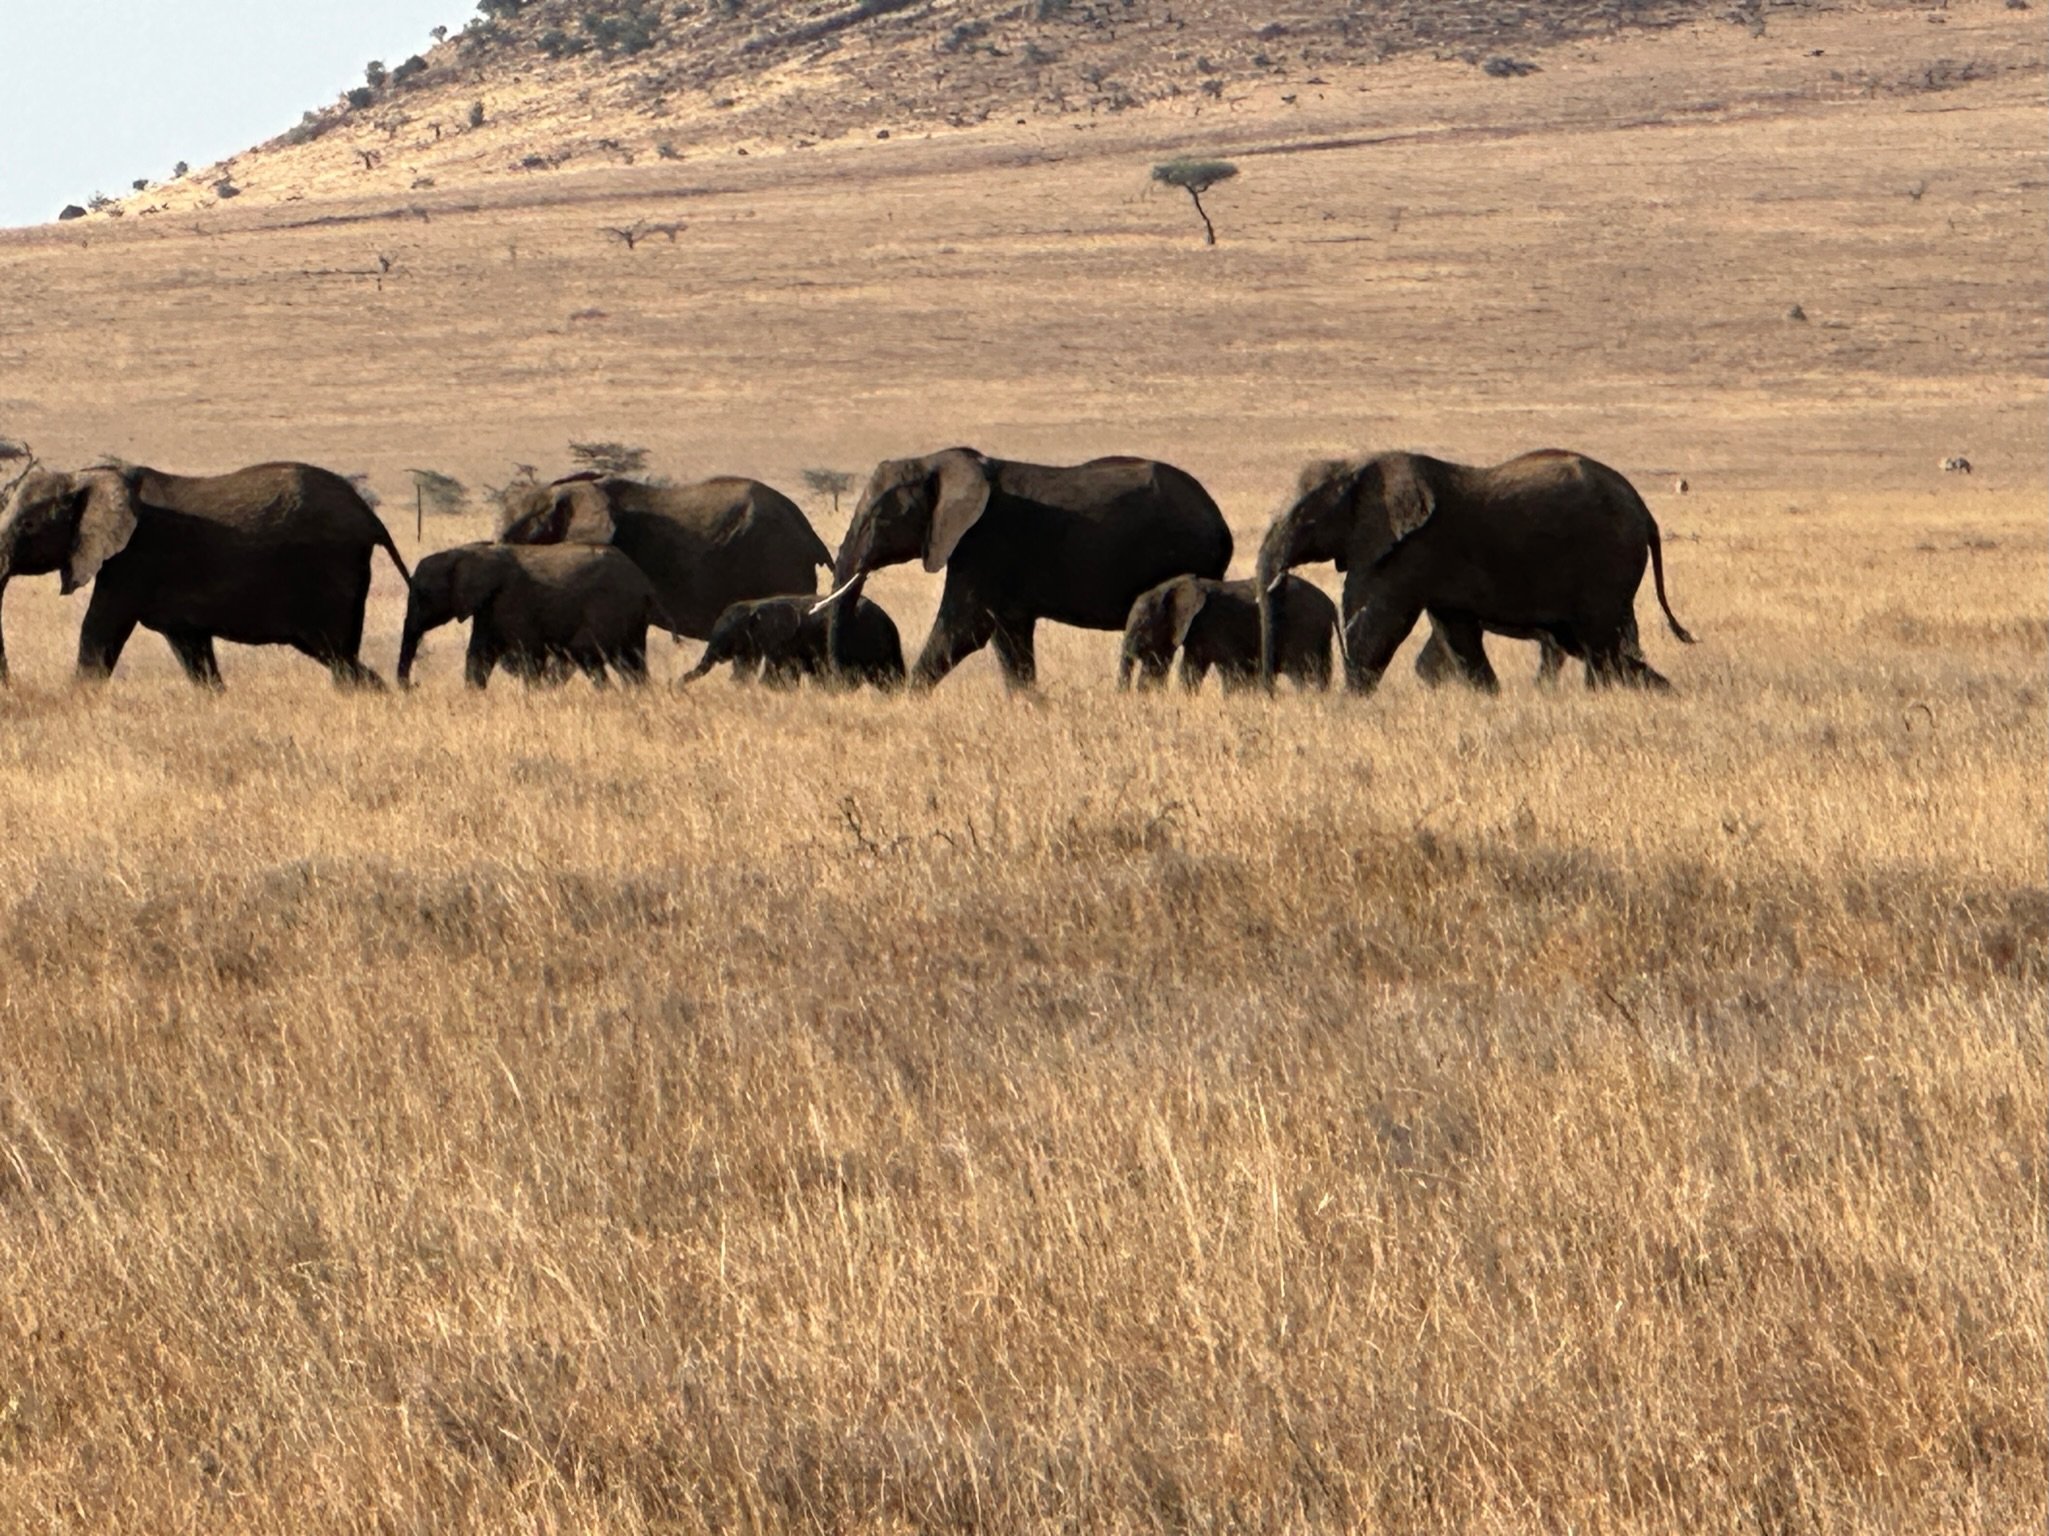 elephants in a row.JPG